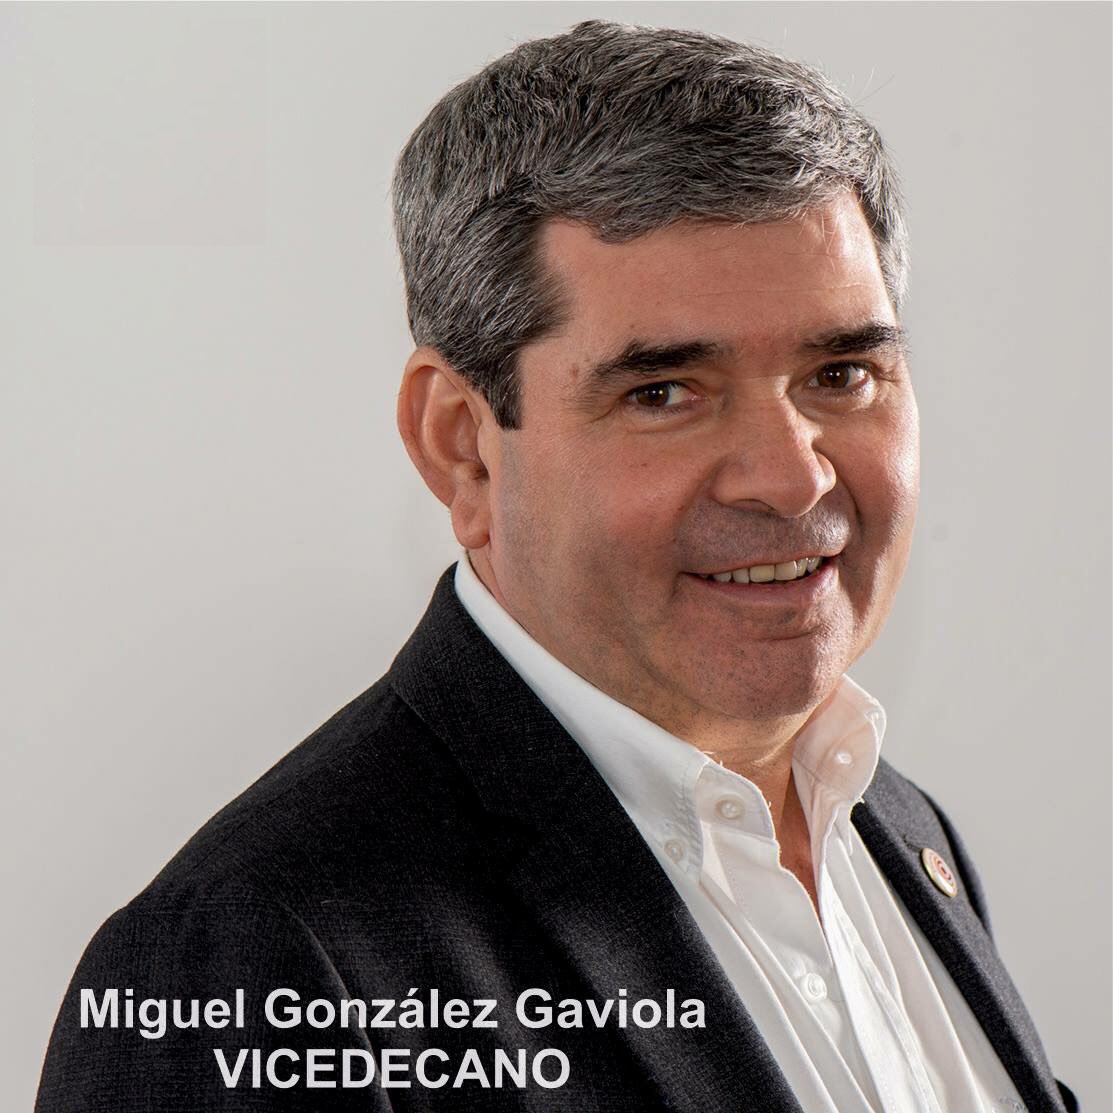 Miguel Gonzalez Gaviola